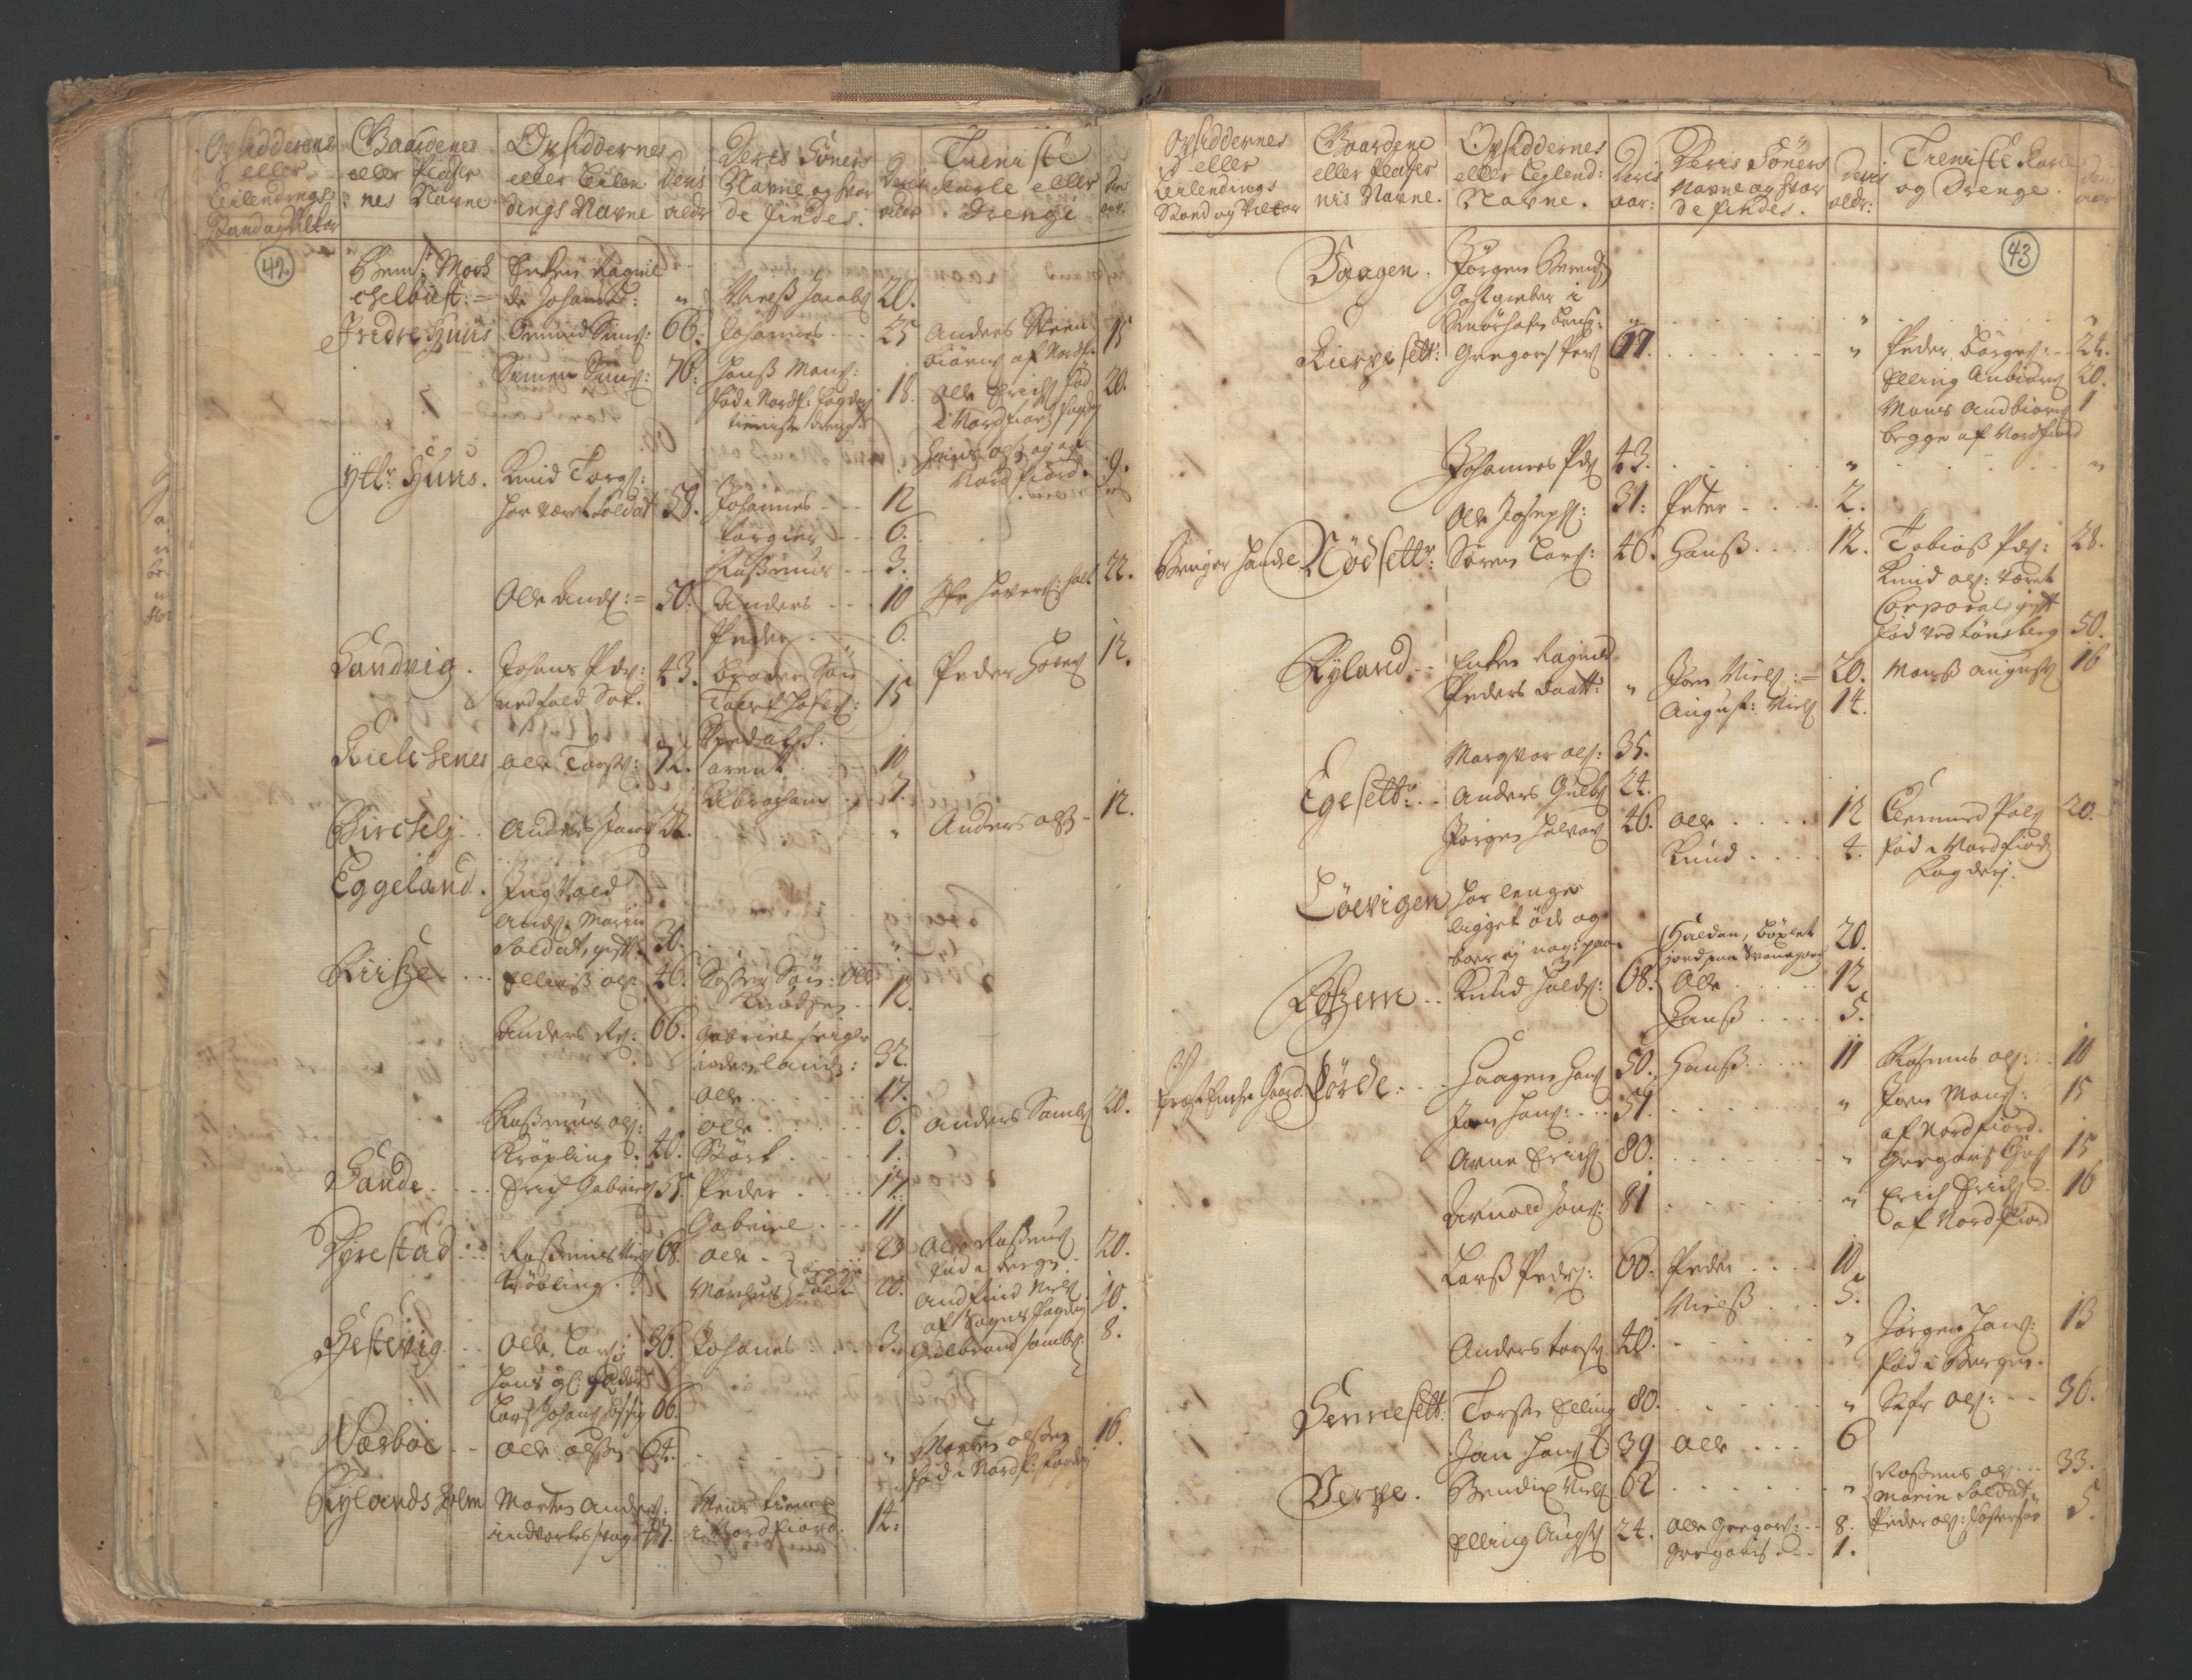 RA, Census (manntall) 1701, no. 9: Sunnfjord fogderi, Nordfjord fogderi and Svanø birk, 1701, p. 42-43